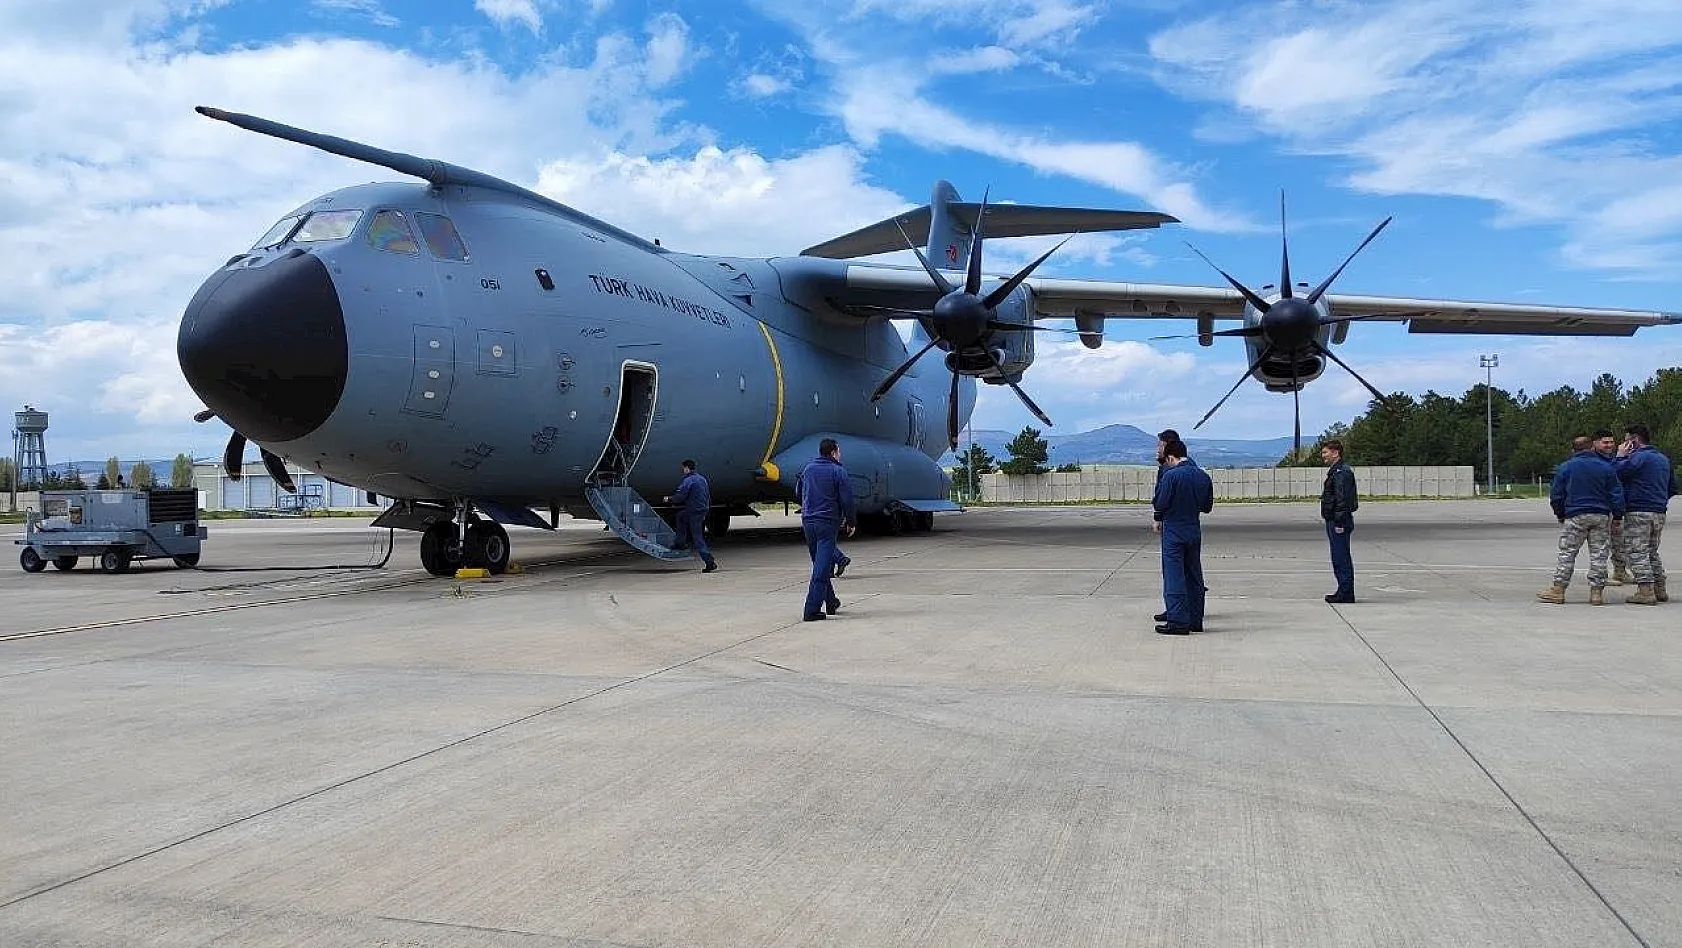 İki adet C-130 tipi uçağımız emniyetli şekilde Sudan'dan ayrıldı